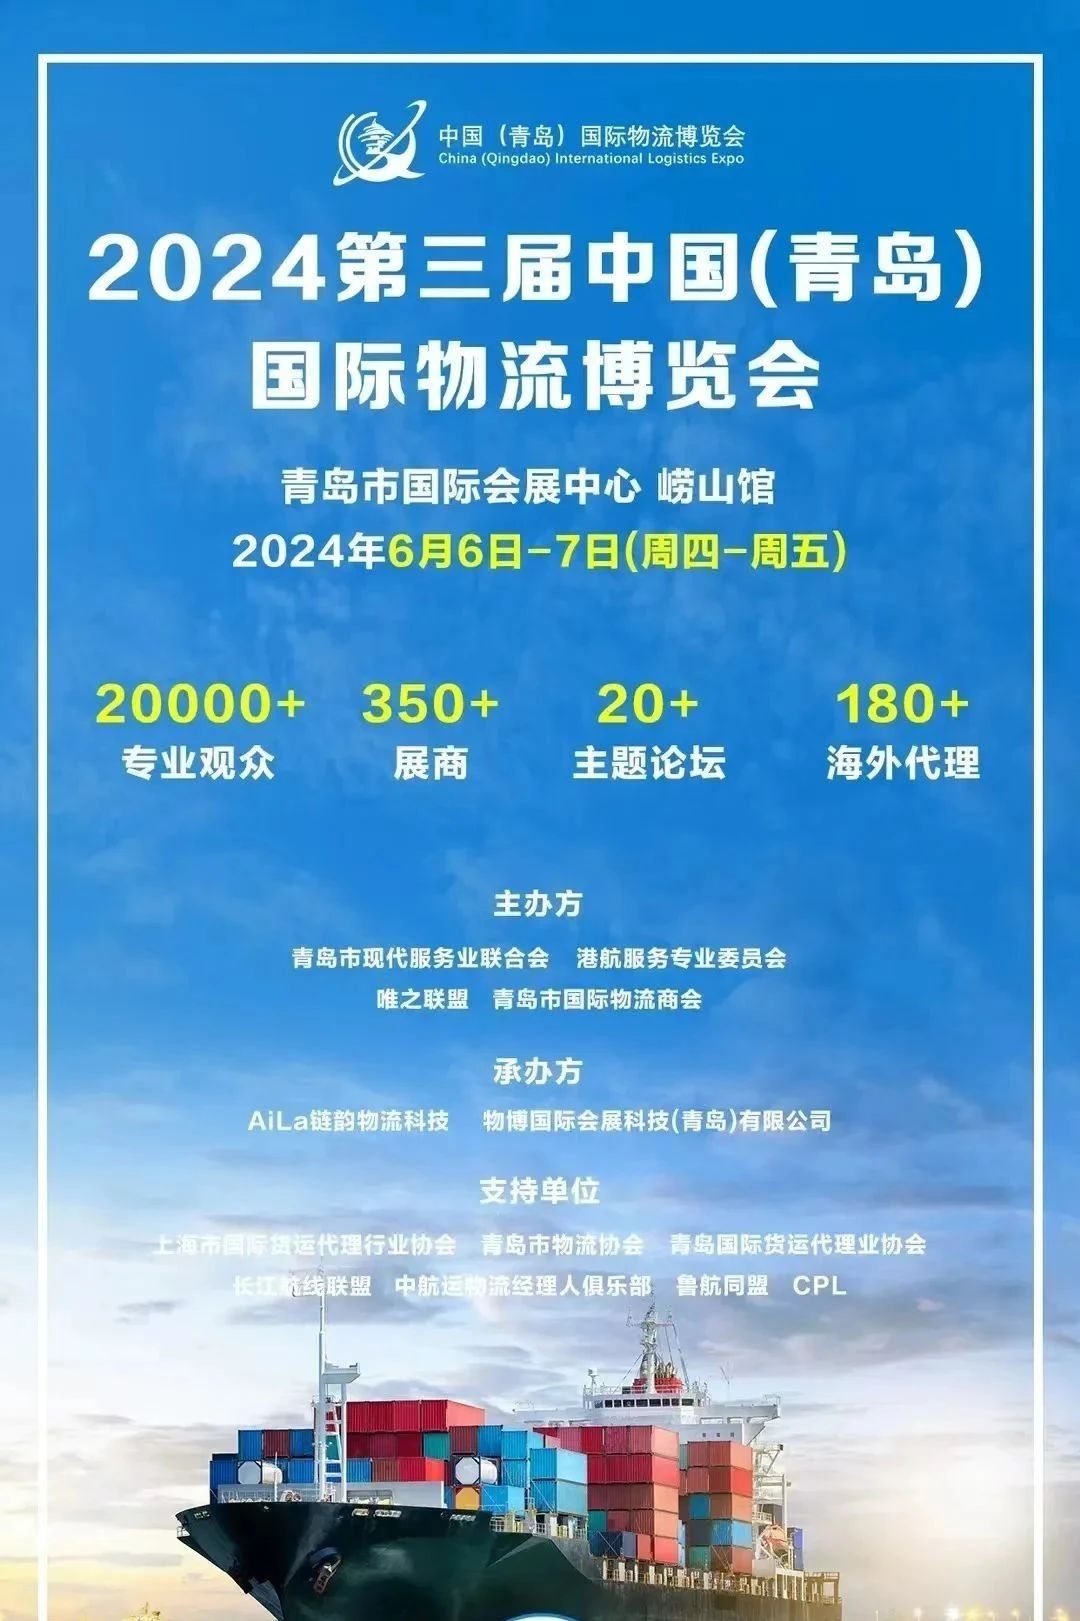 「零距离会展」青岛国际会展中心 2024年6月展会排期表